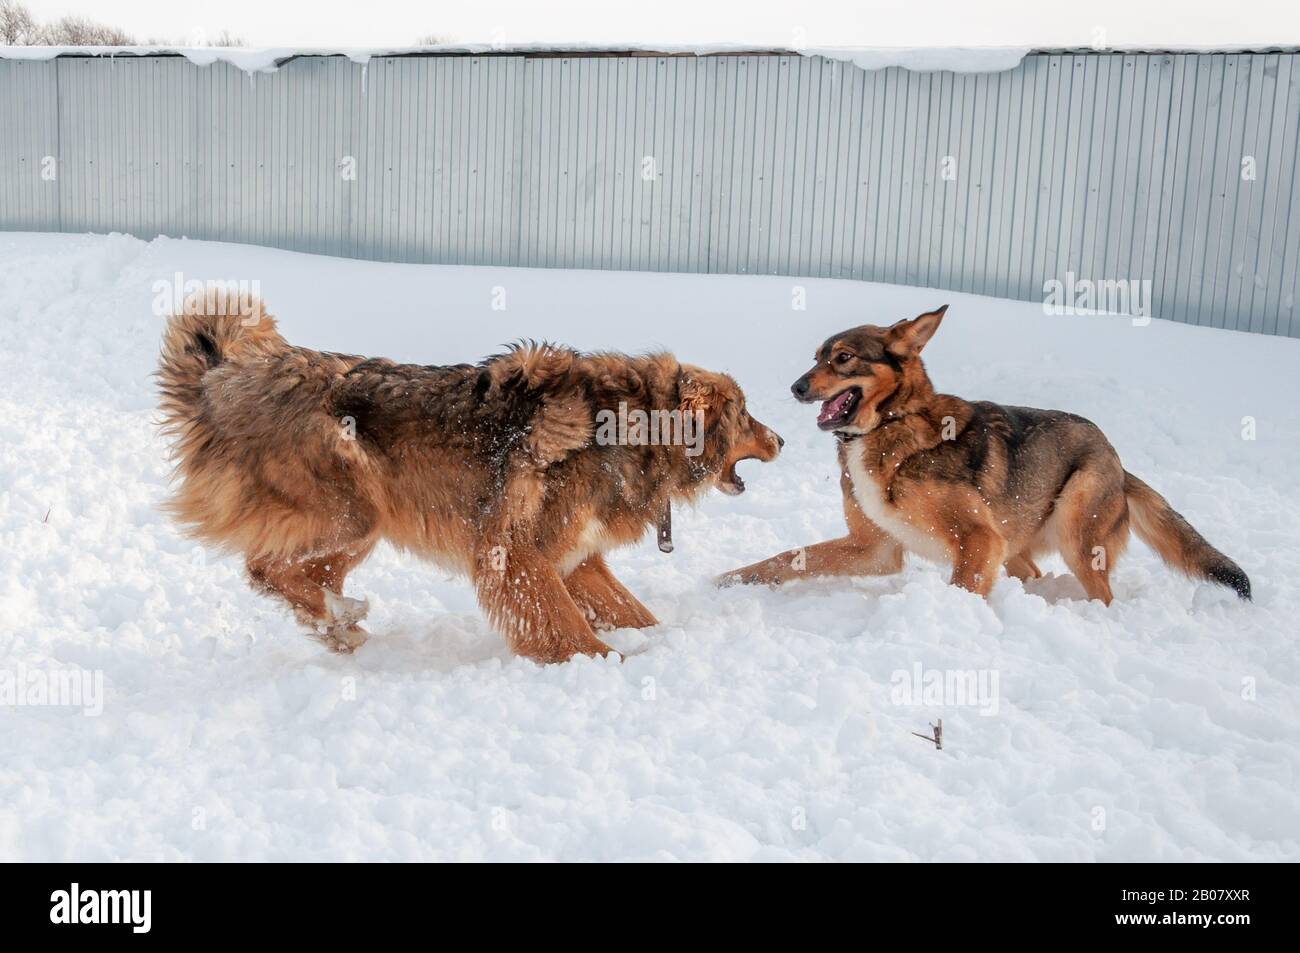 Große schöne rote Hunde spielen miteinander, laufen auf der schneebedeckten Fläche und genießen an einem schönen Wintertag einen Spaziergang im Freien Stockfoto